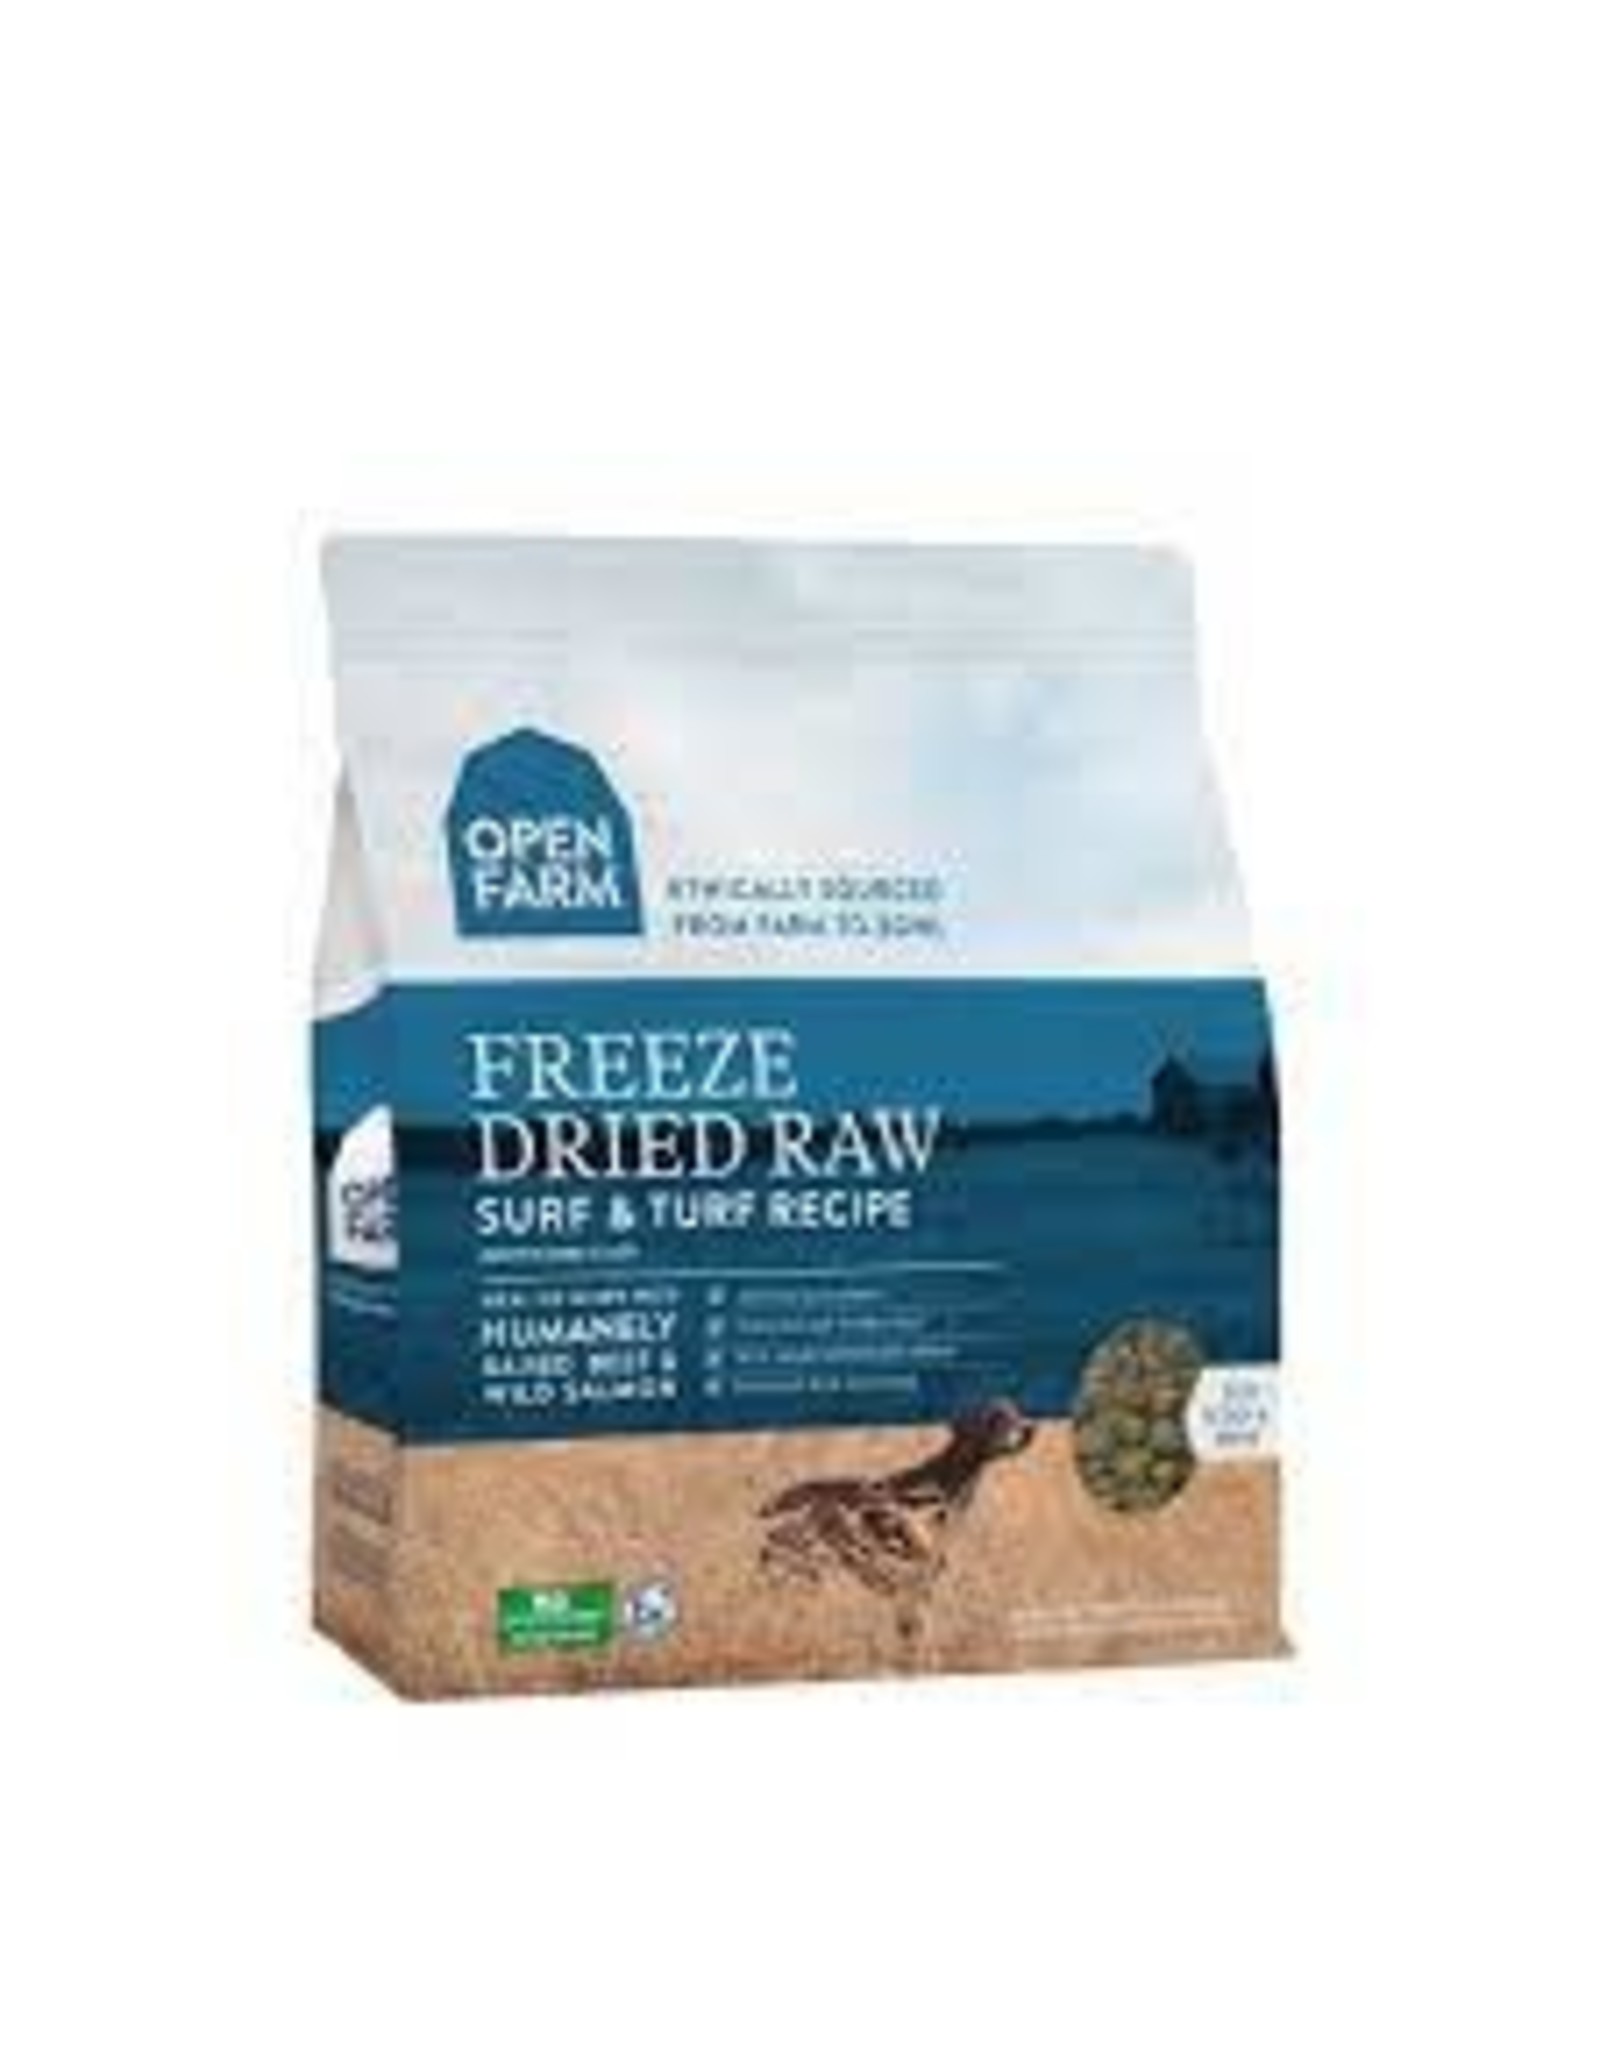 Open Farm Surf & Turf Freeze-Dried Raw